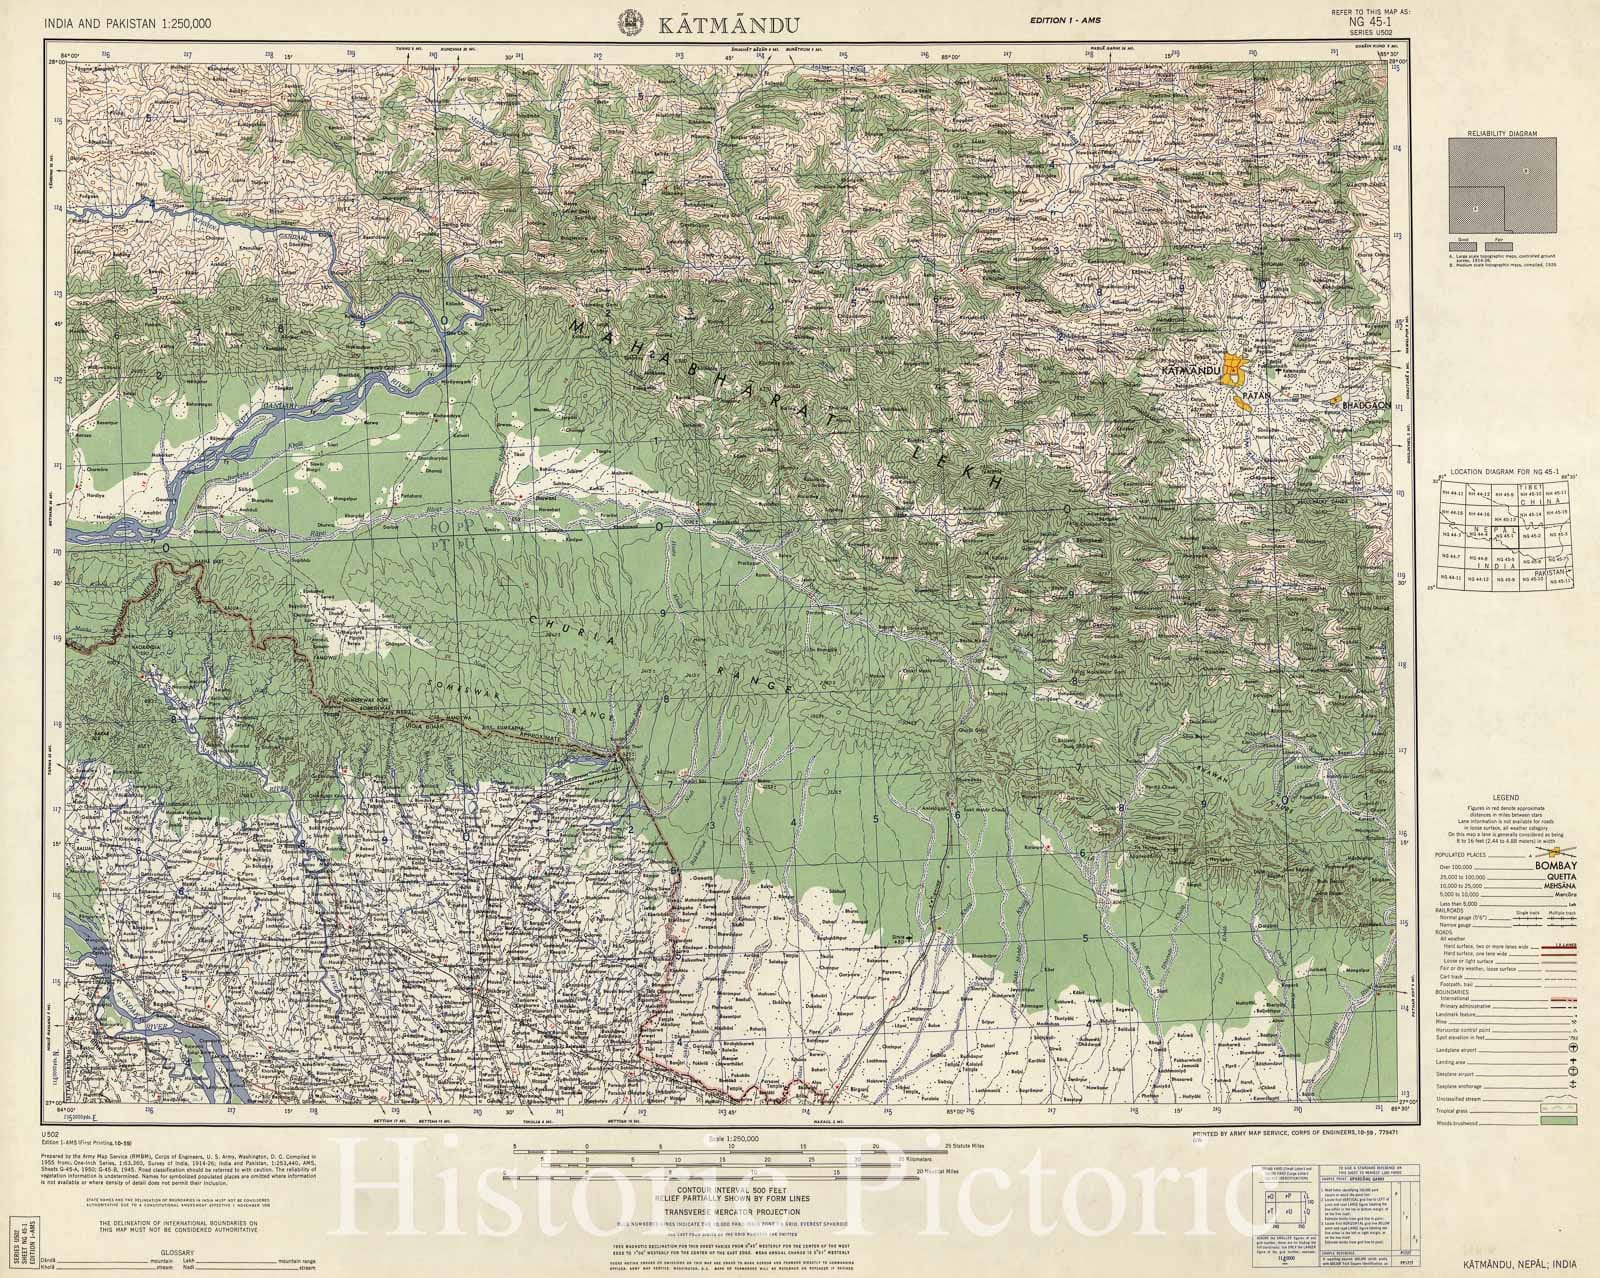 Historic 1955 Map - India and Pakistan 1:250,000. - Katmandu, Nepal, India 1959